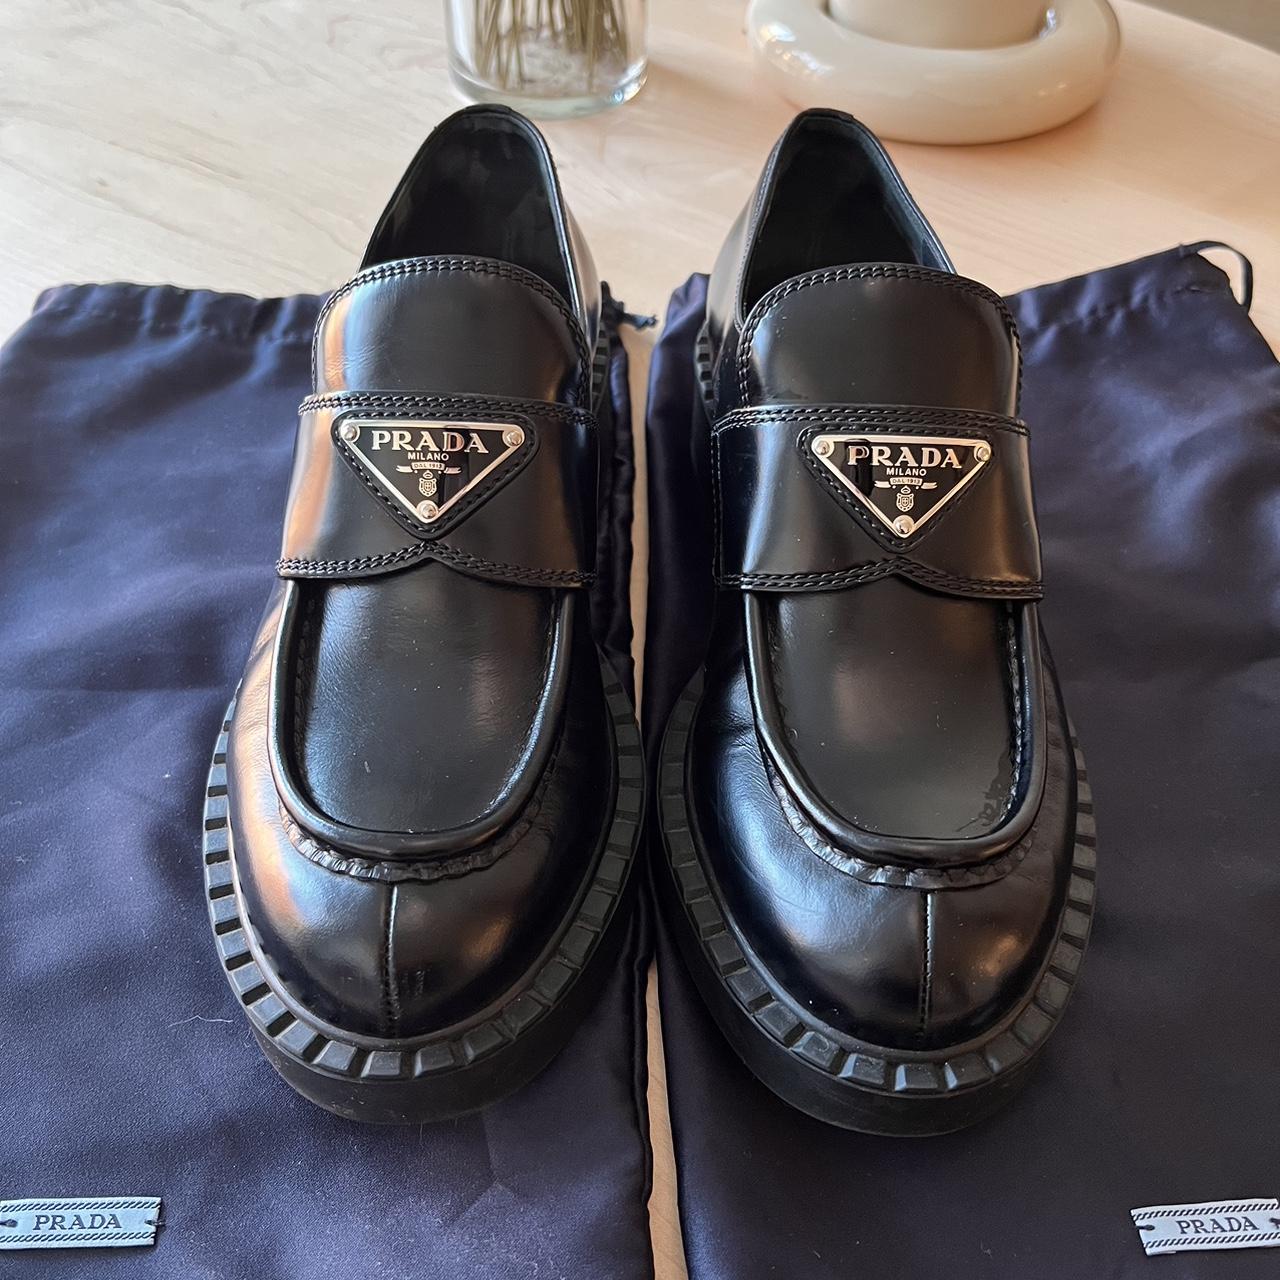 Prada Black Spazzolato Logo Leather #Loafers in... - Depop